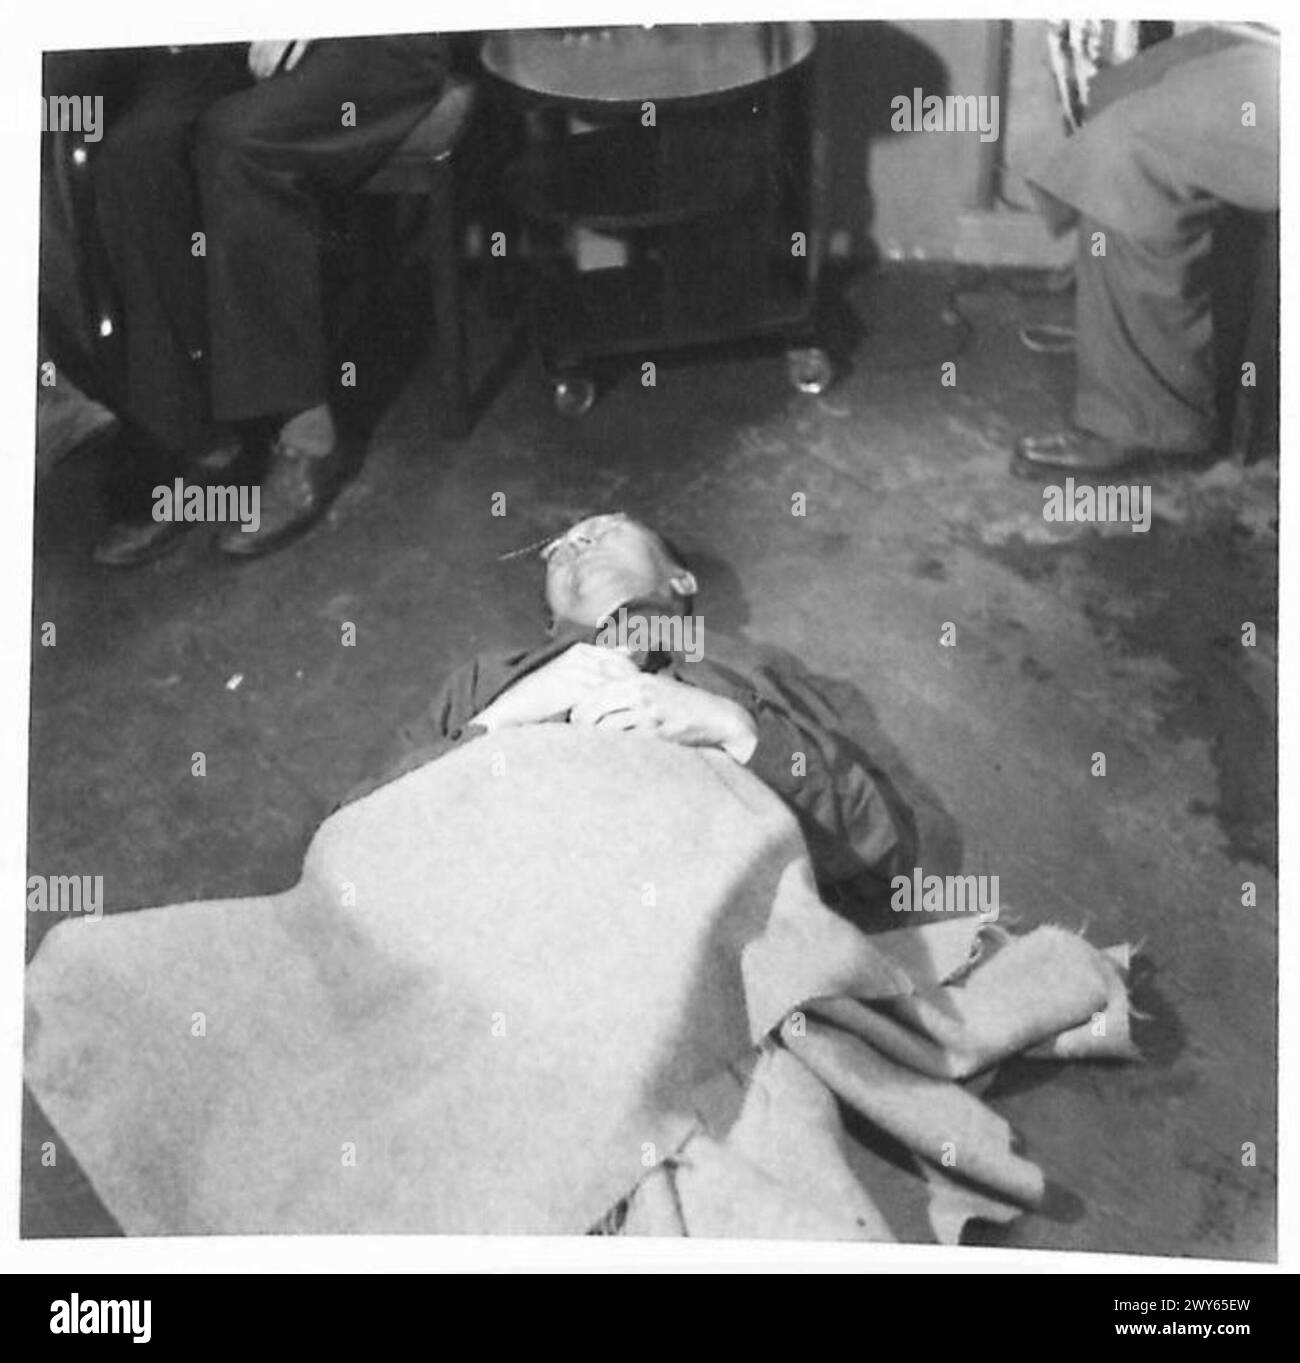 DER LEICHNAM VON HEINRICH HIMMLER - Himmlers Leichnam teilweise mit einer Decke bedeckt, fotografiert am 2. Heeresquartier in Lüneburg. Britische Armee, 21. Armeegruppe Stockfoto